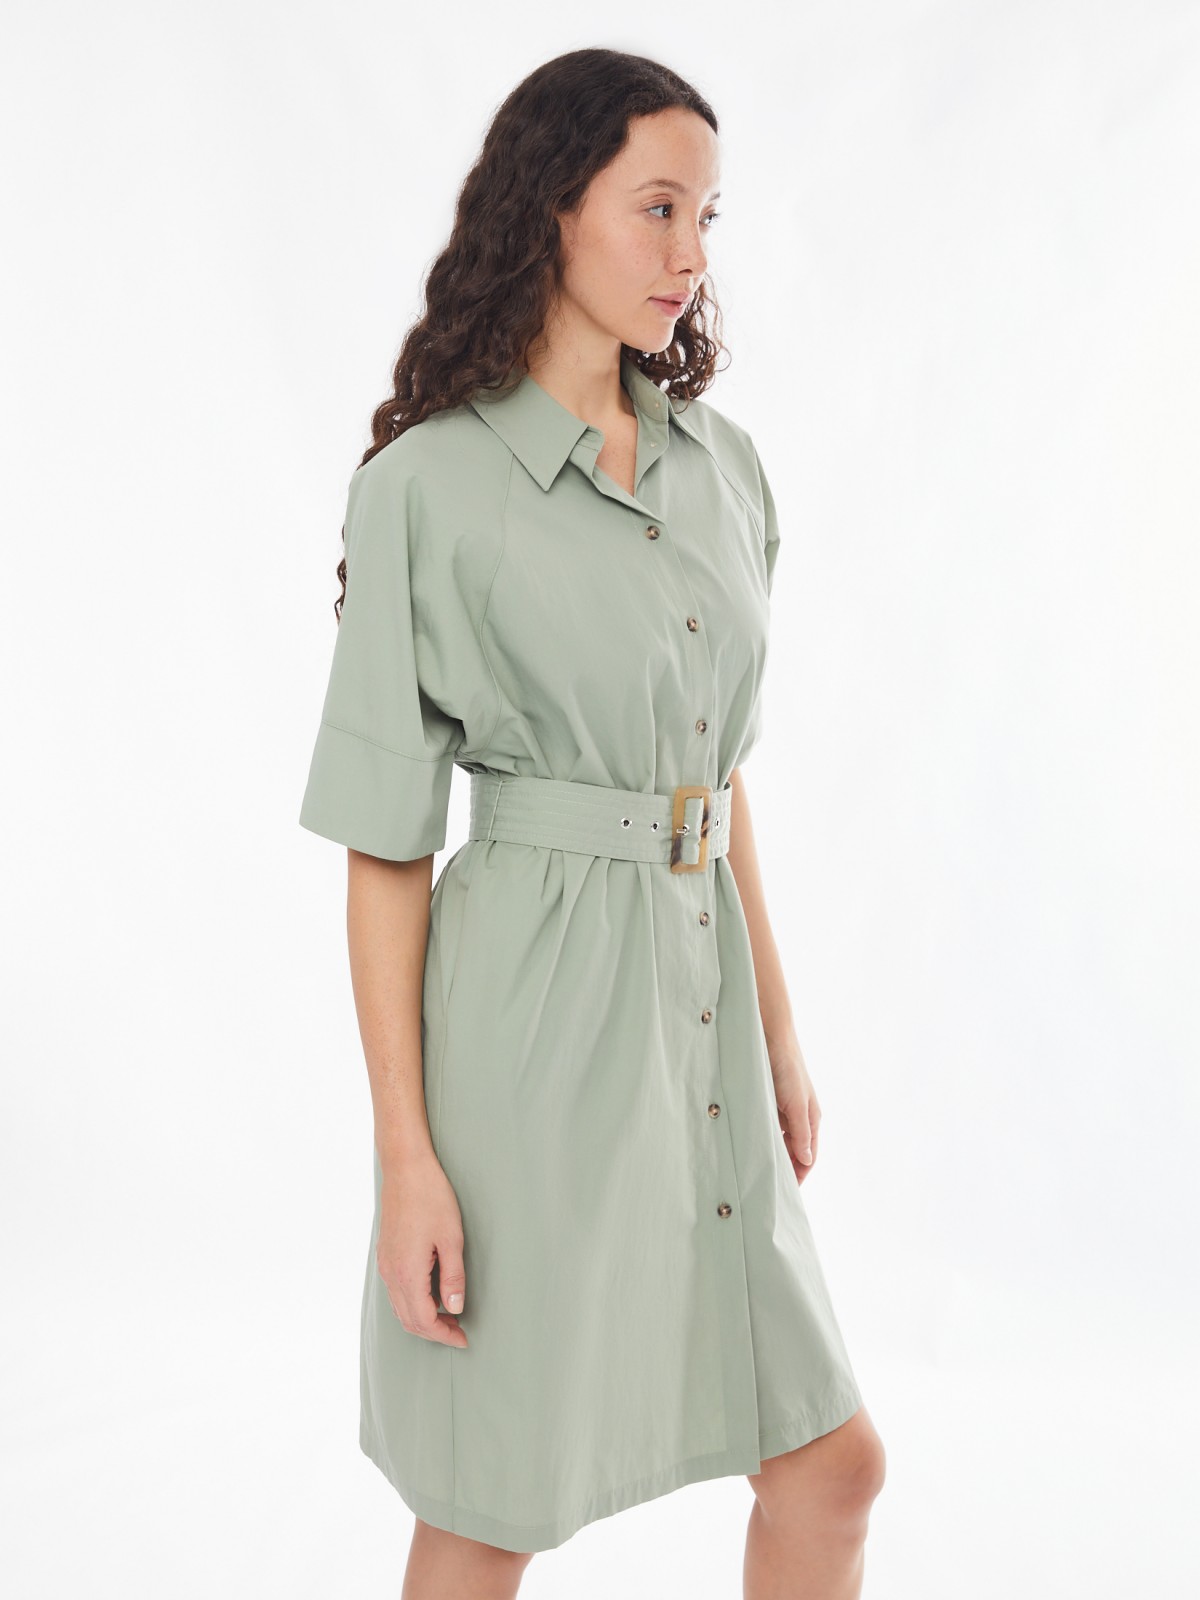 Платье-рубашка с ремнём и рукавами-реглан zolla 02413827Y111, цвет хаки, размер XS/S